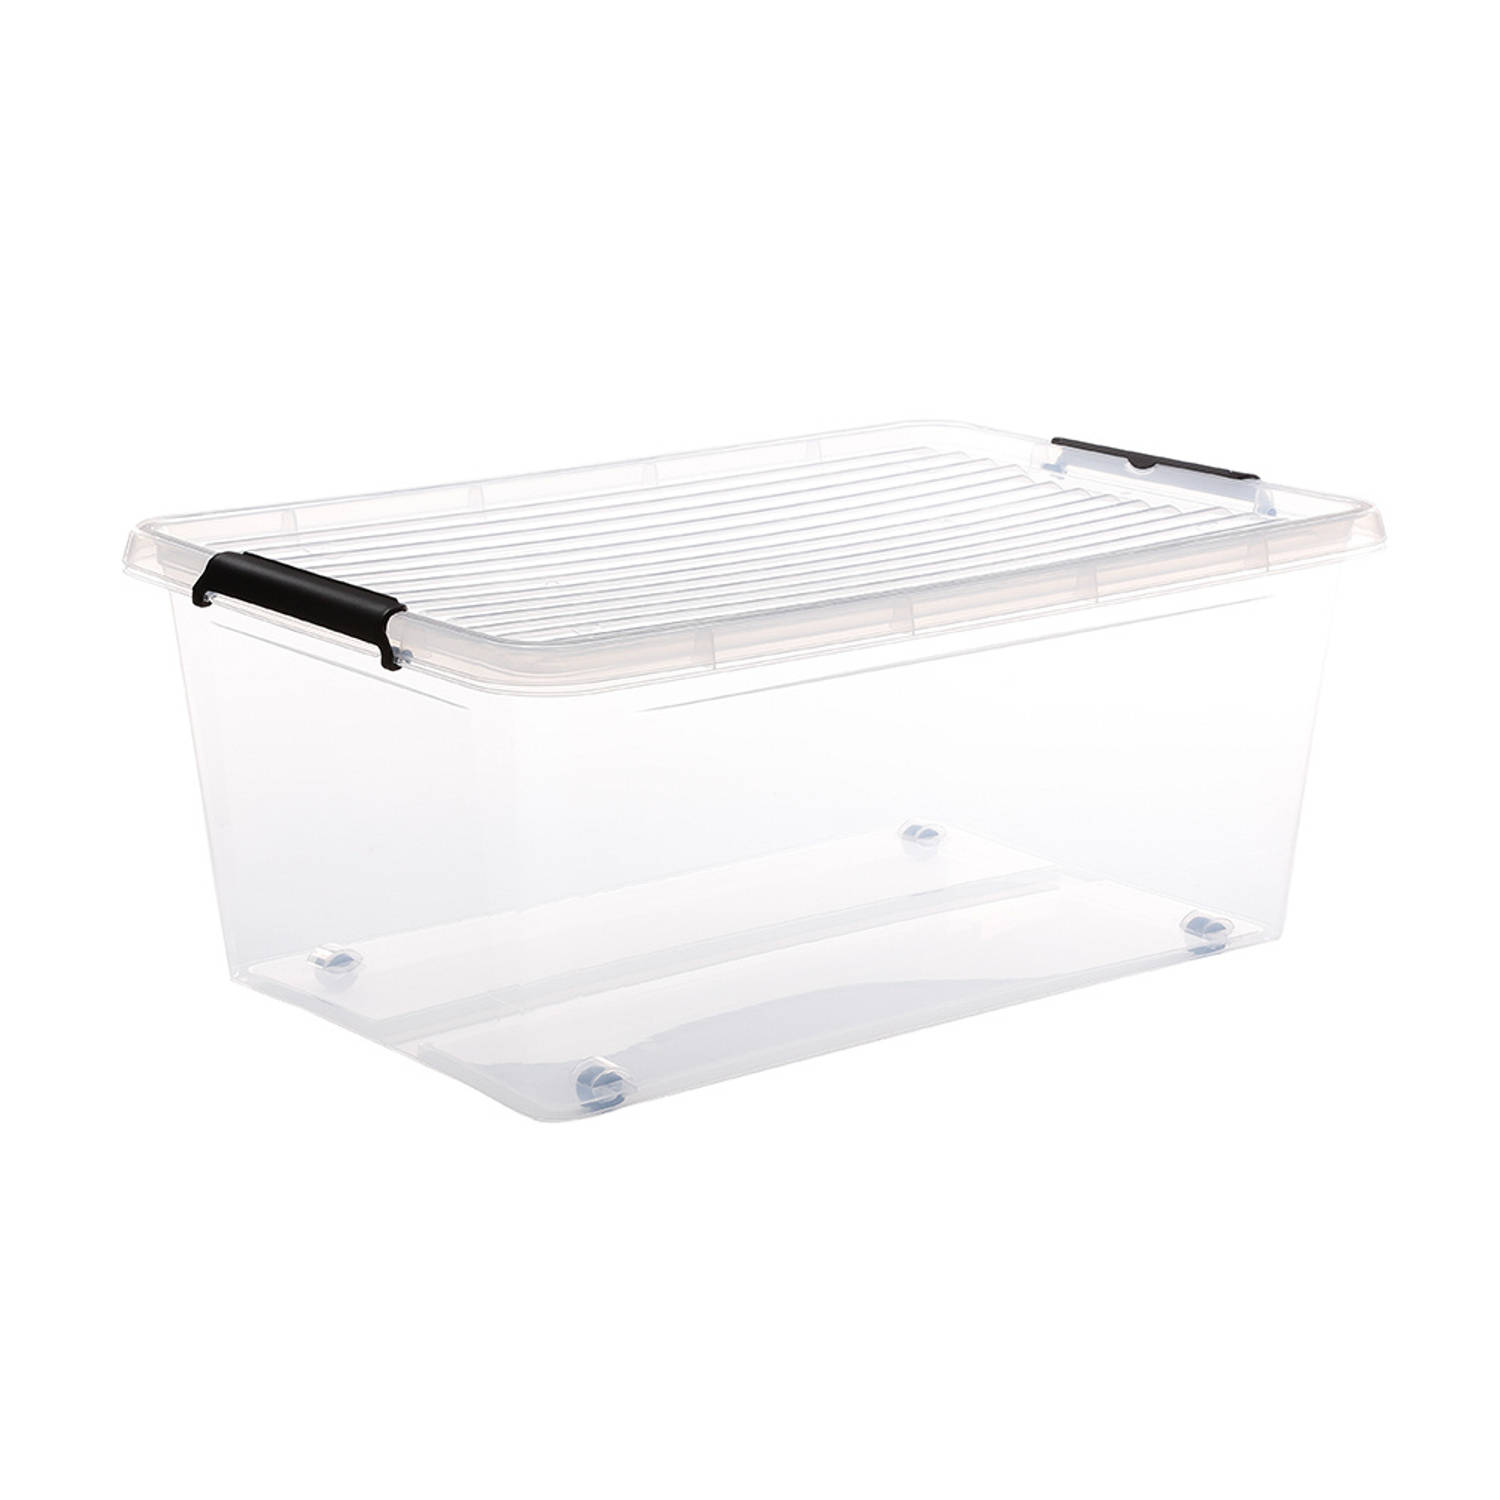 Five® Doorzichtige opbergboxen met clipsluiting 40 liter - 40 liter - rolbaar (58 x 39 x 25,5 cm) - Stapelbaar, Klaar voor gebruik